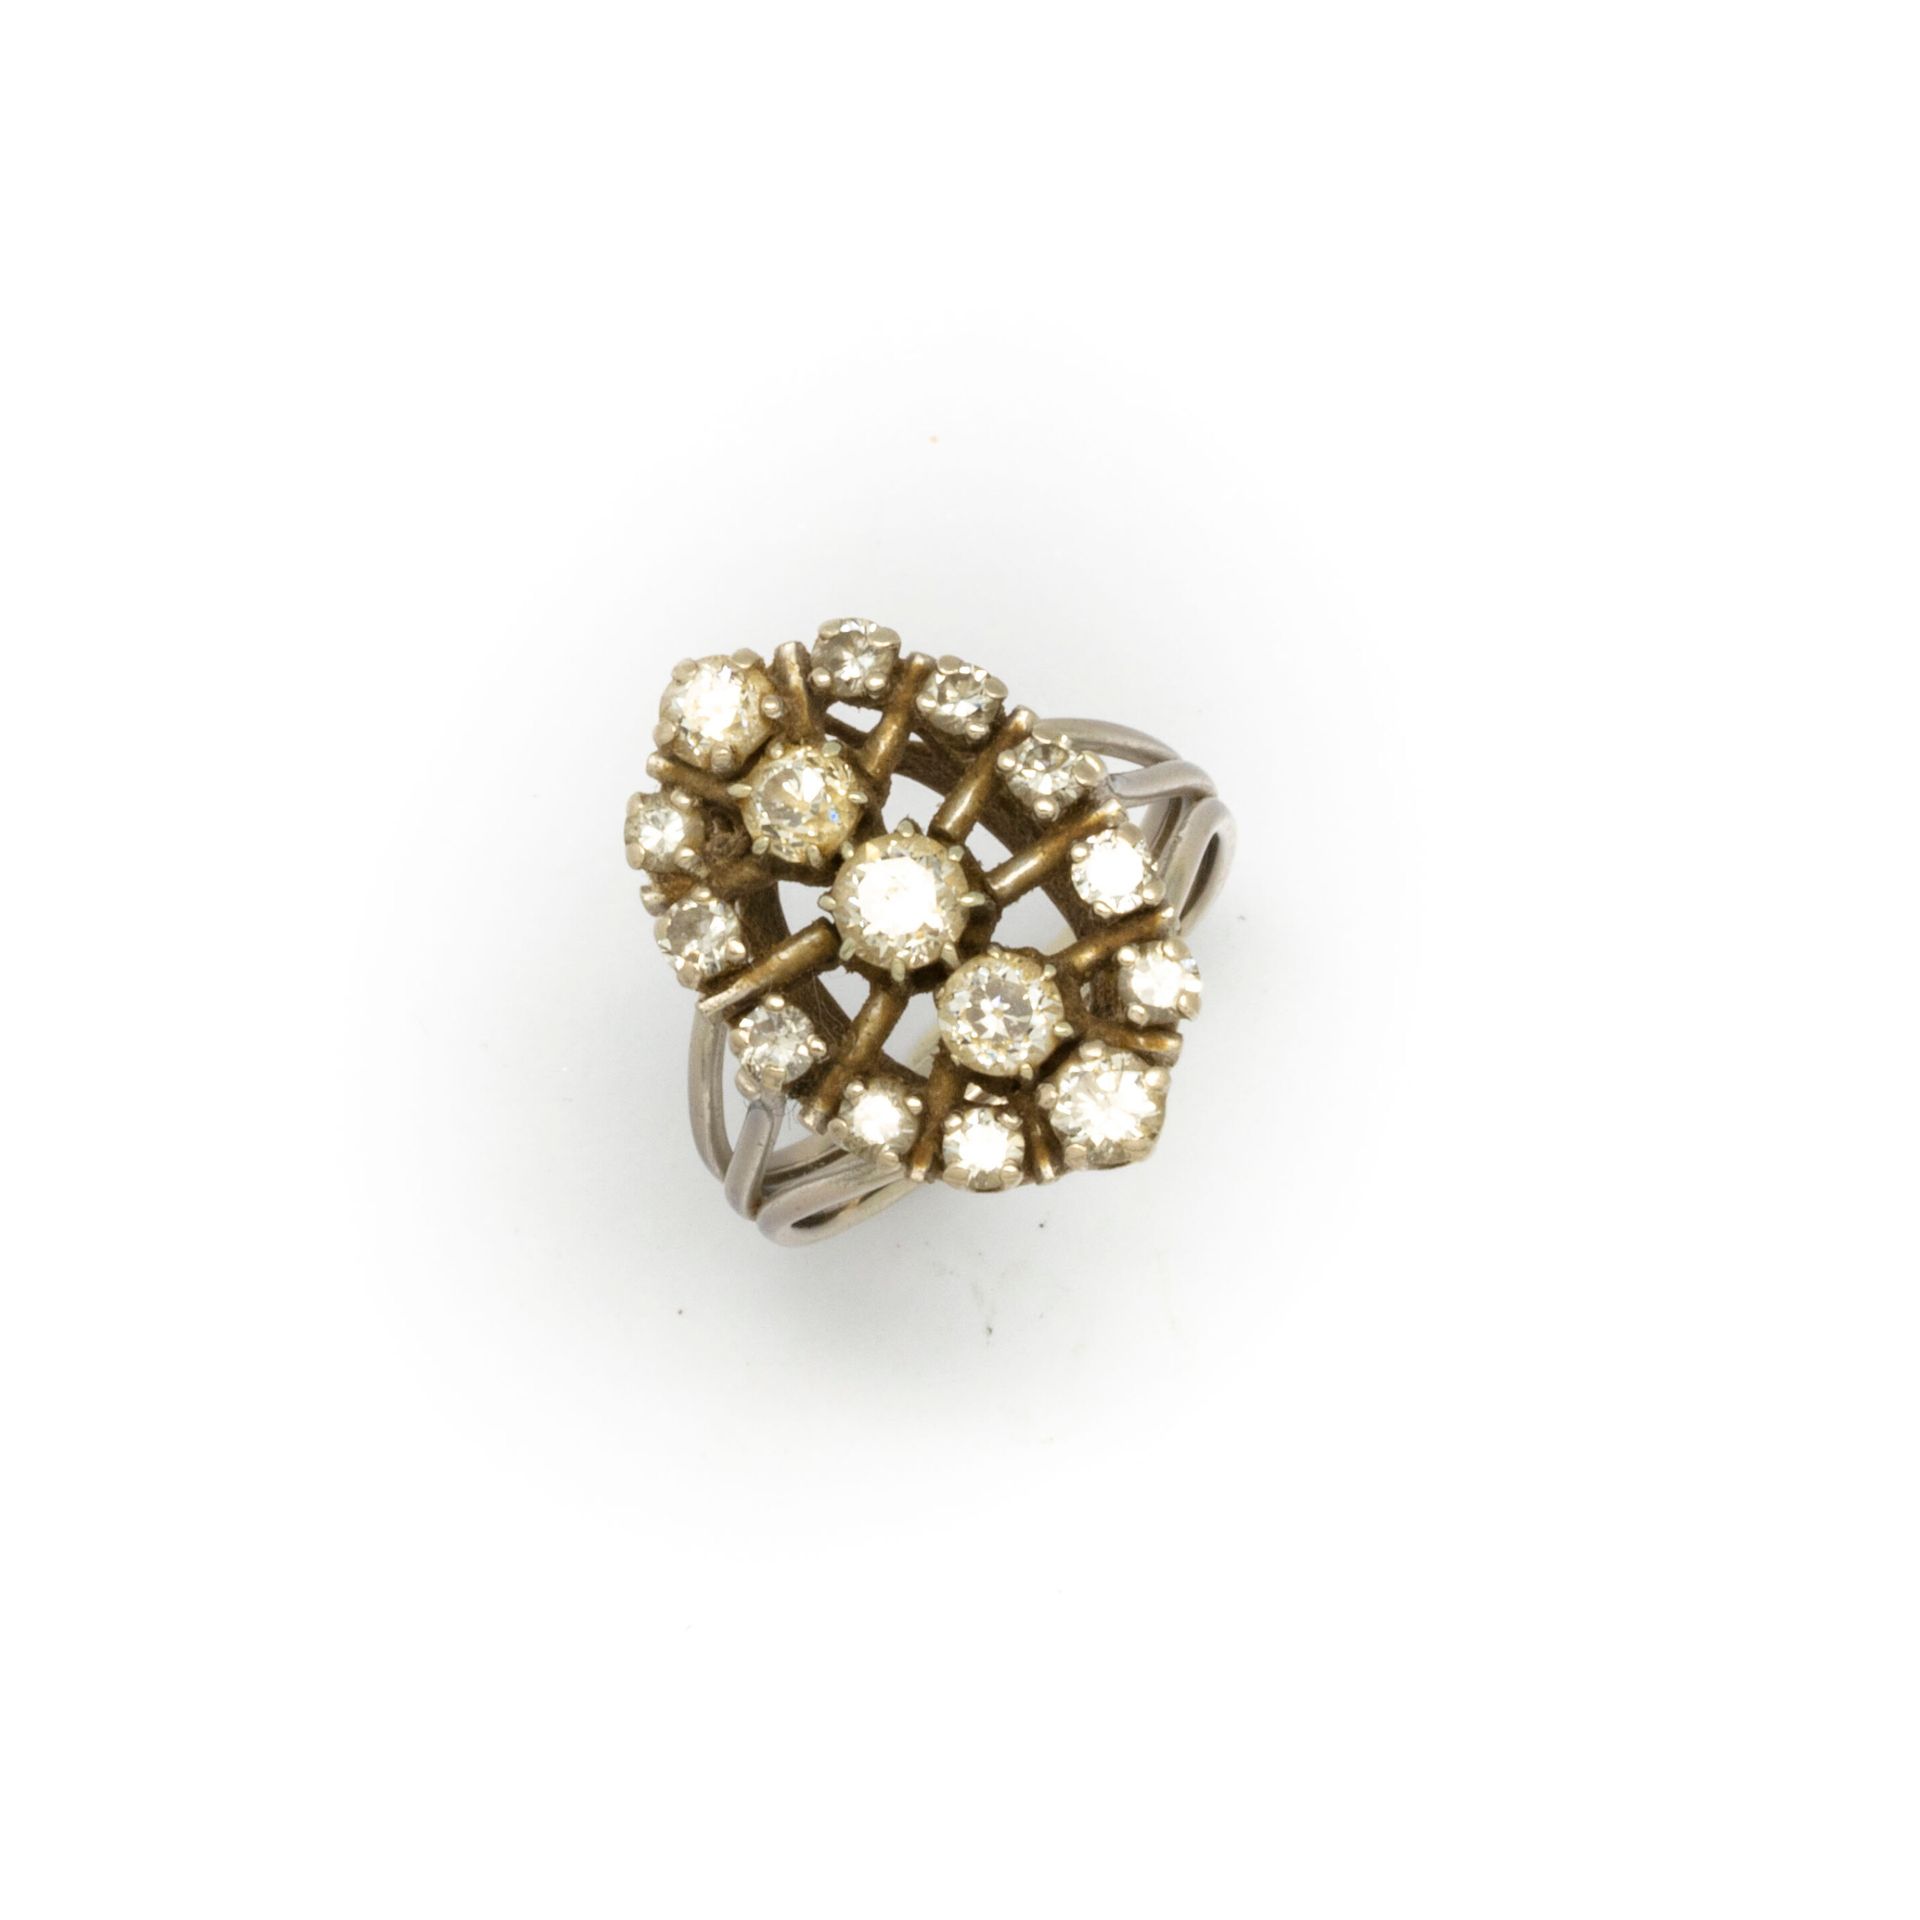 Null 铺镶小钻石的白金脐带戒指

TDD : 52

毛重：5.8克。